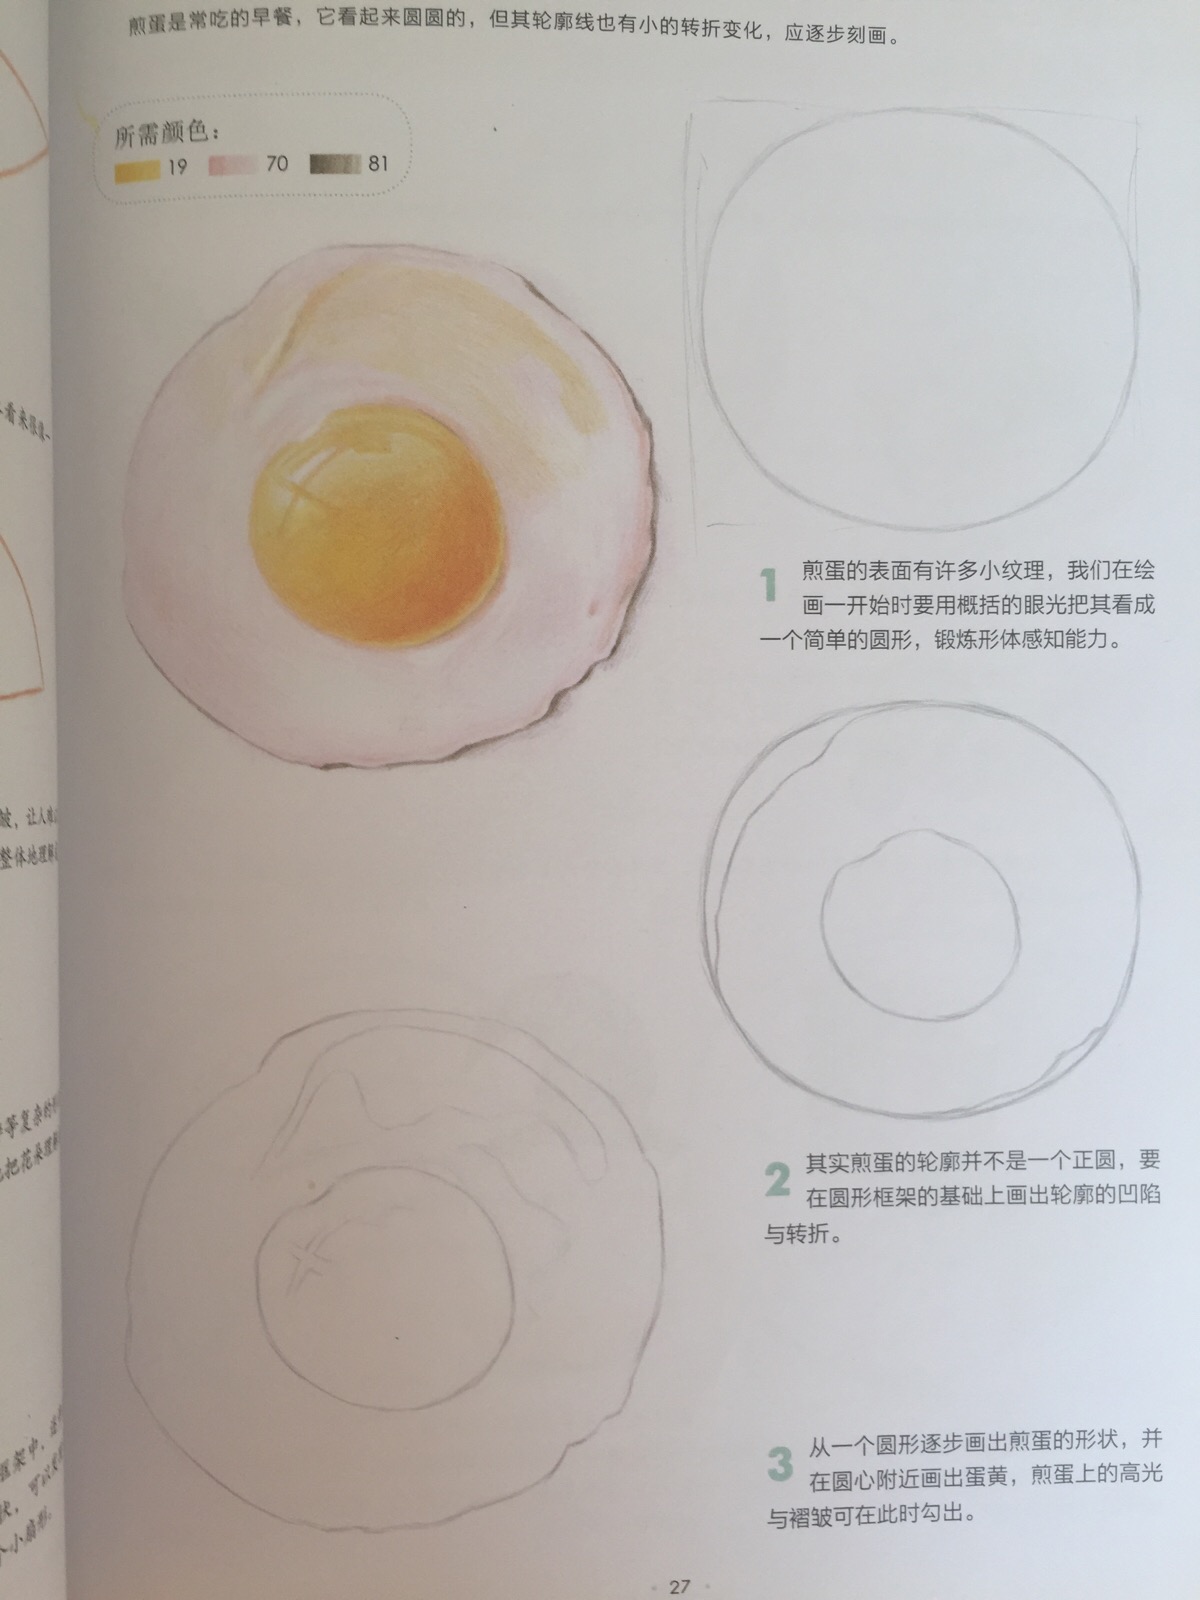 煎鸡蛋的步骤图片